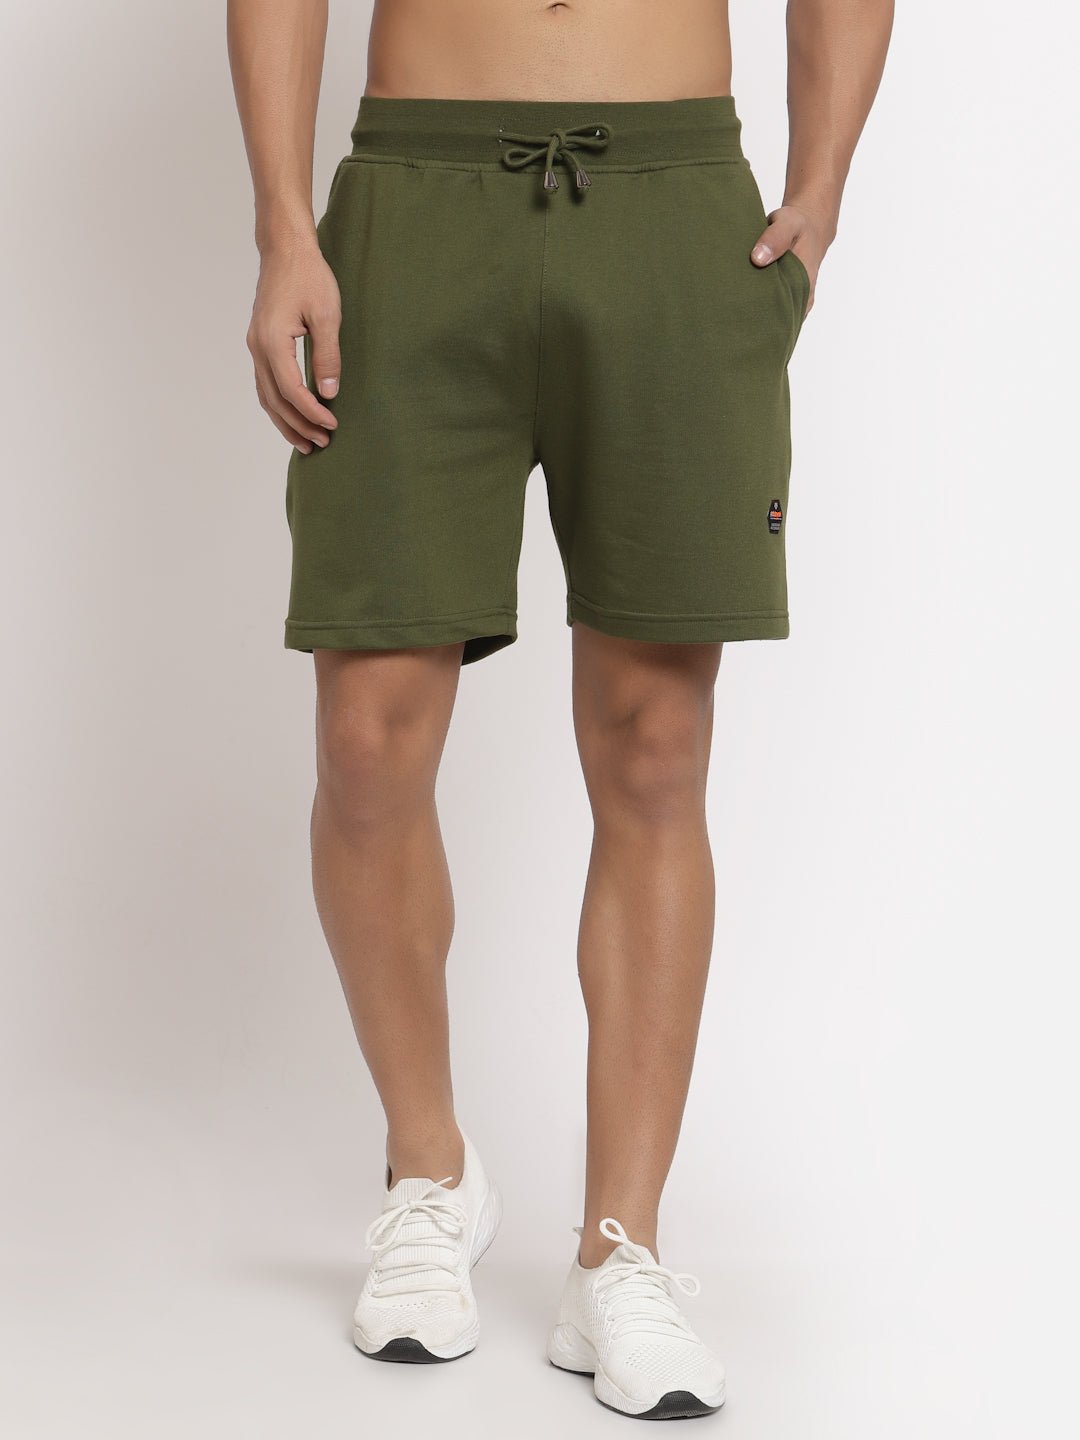 Olive Shorts - clubyork